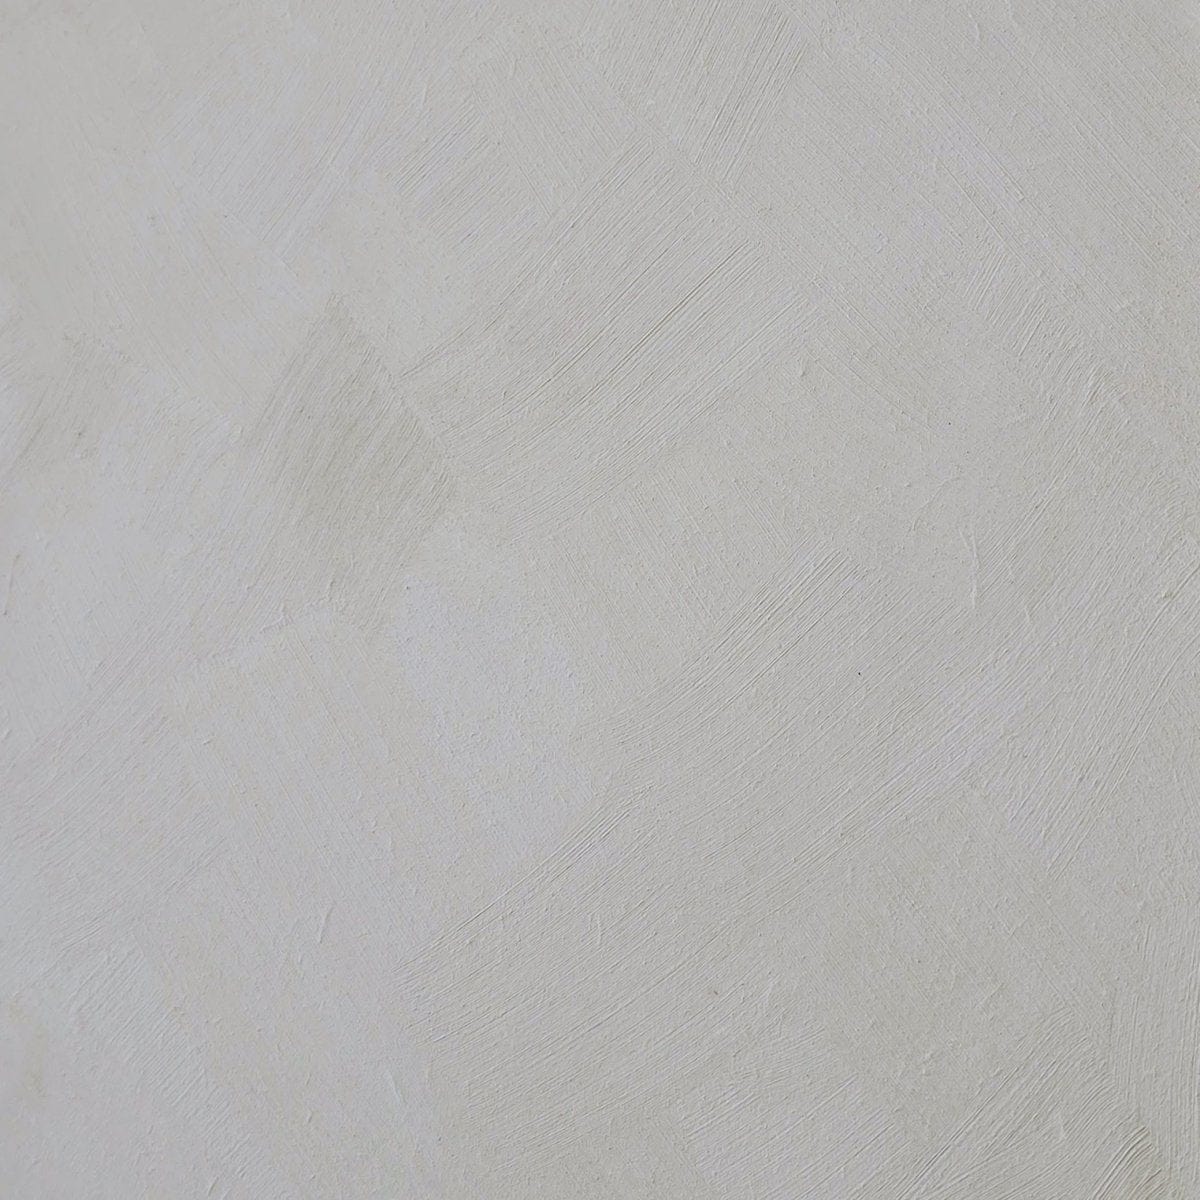 Calcare - Cream White Limewash Wall Paint